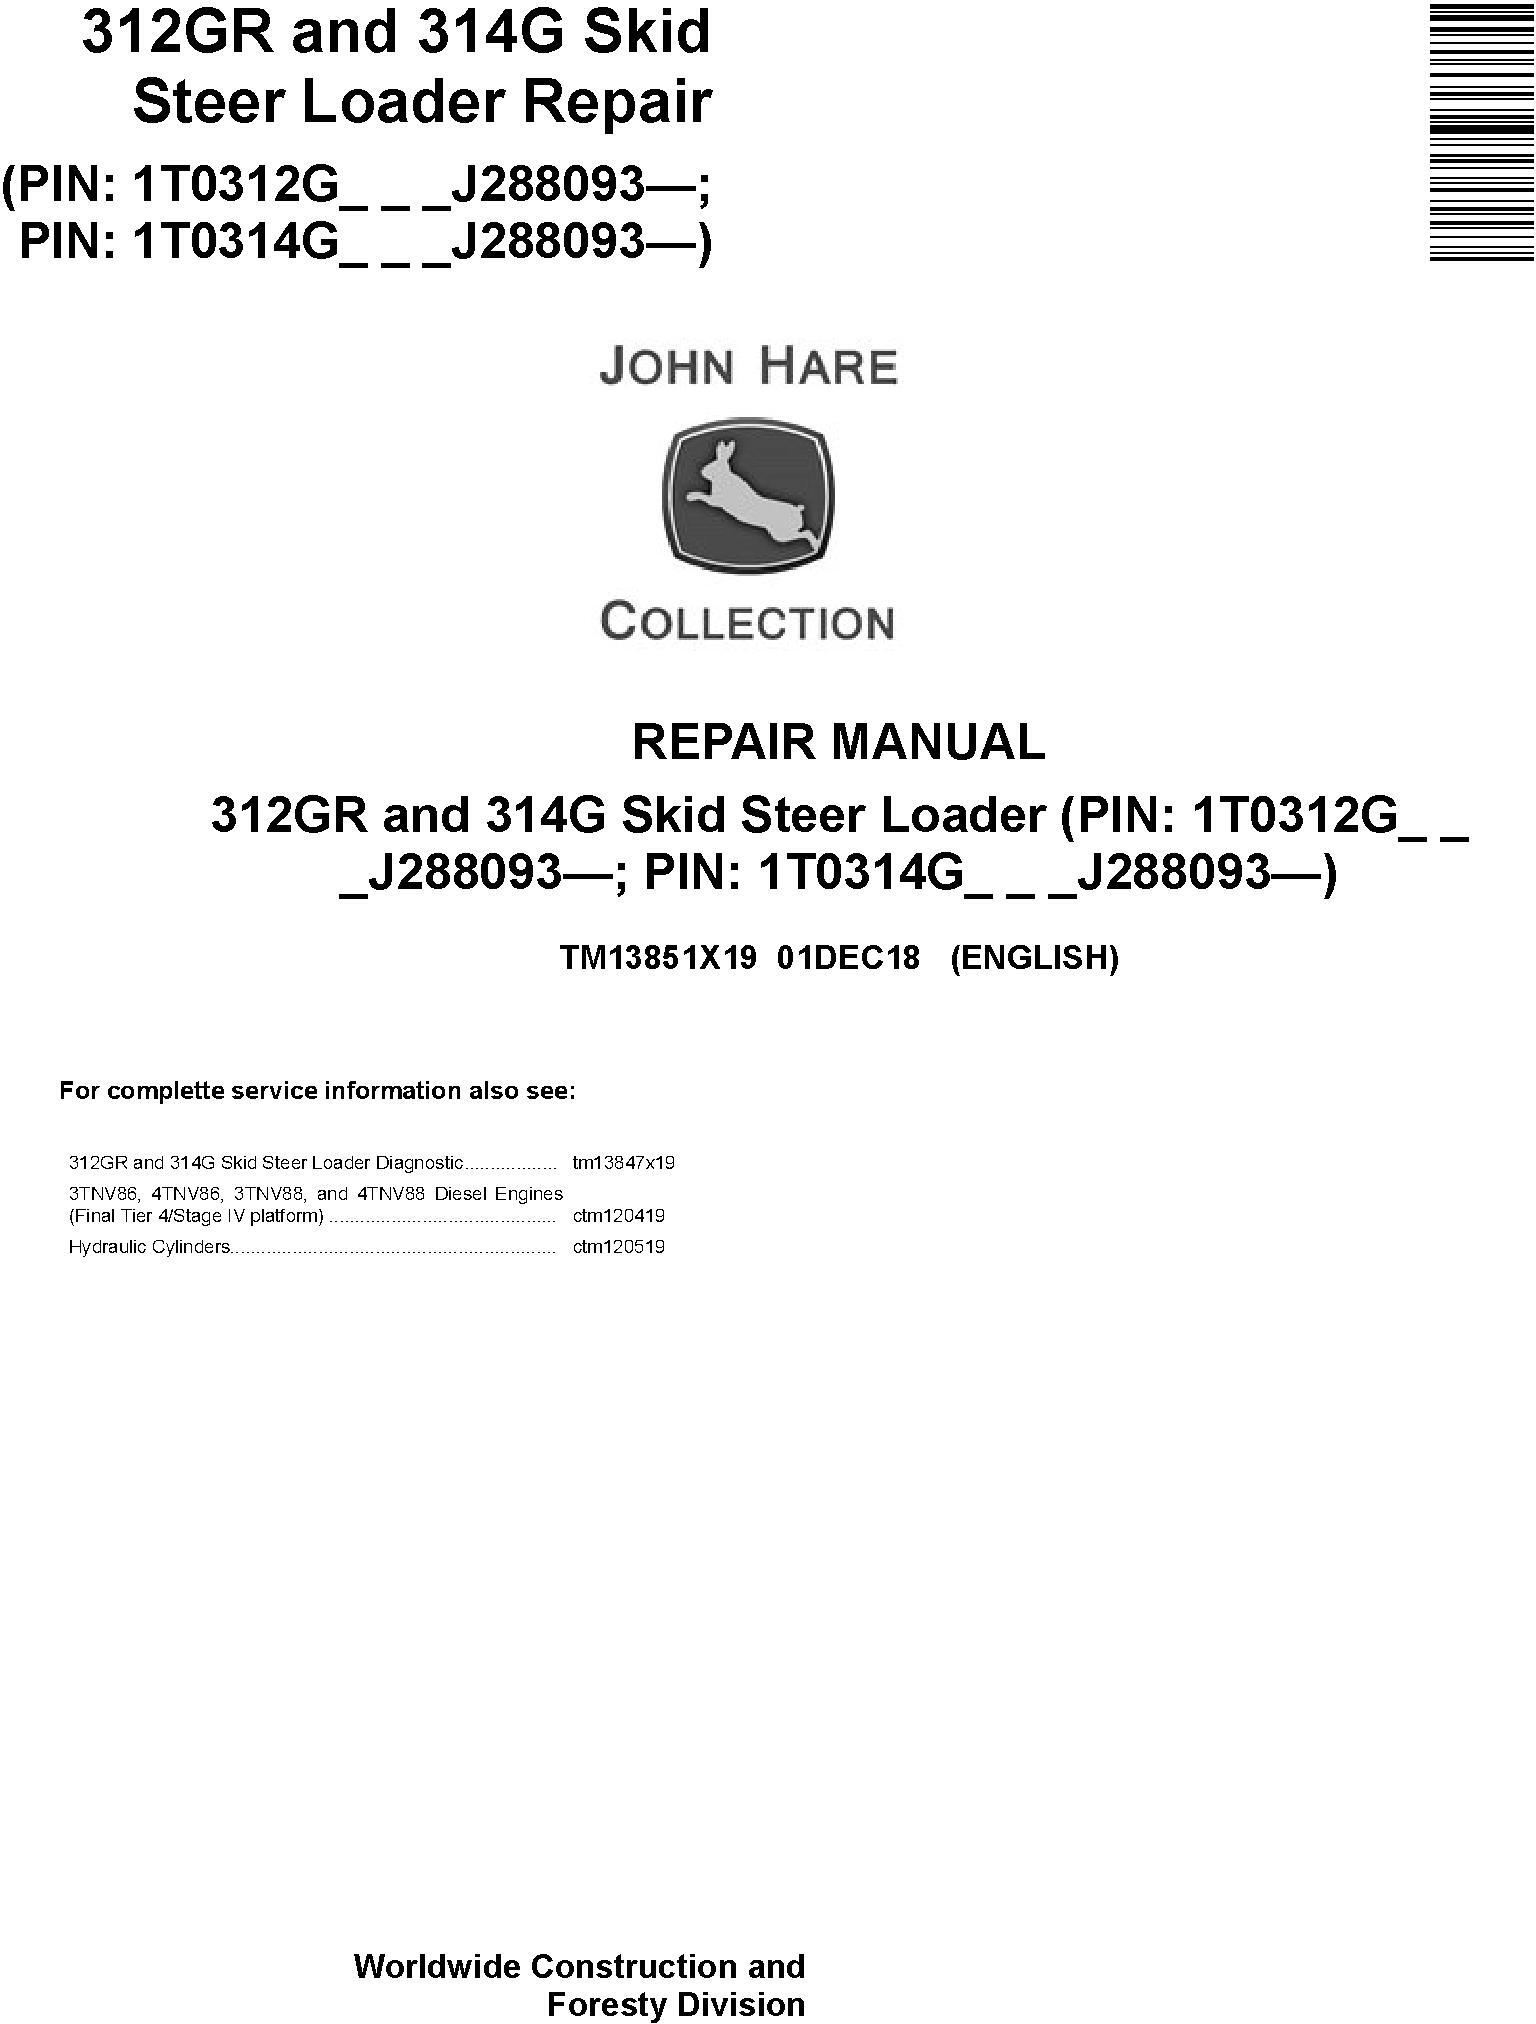 John Deere 312GR and 314G Skid Steer Loader Repair Service Manual (TM13851X19) - 19073